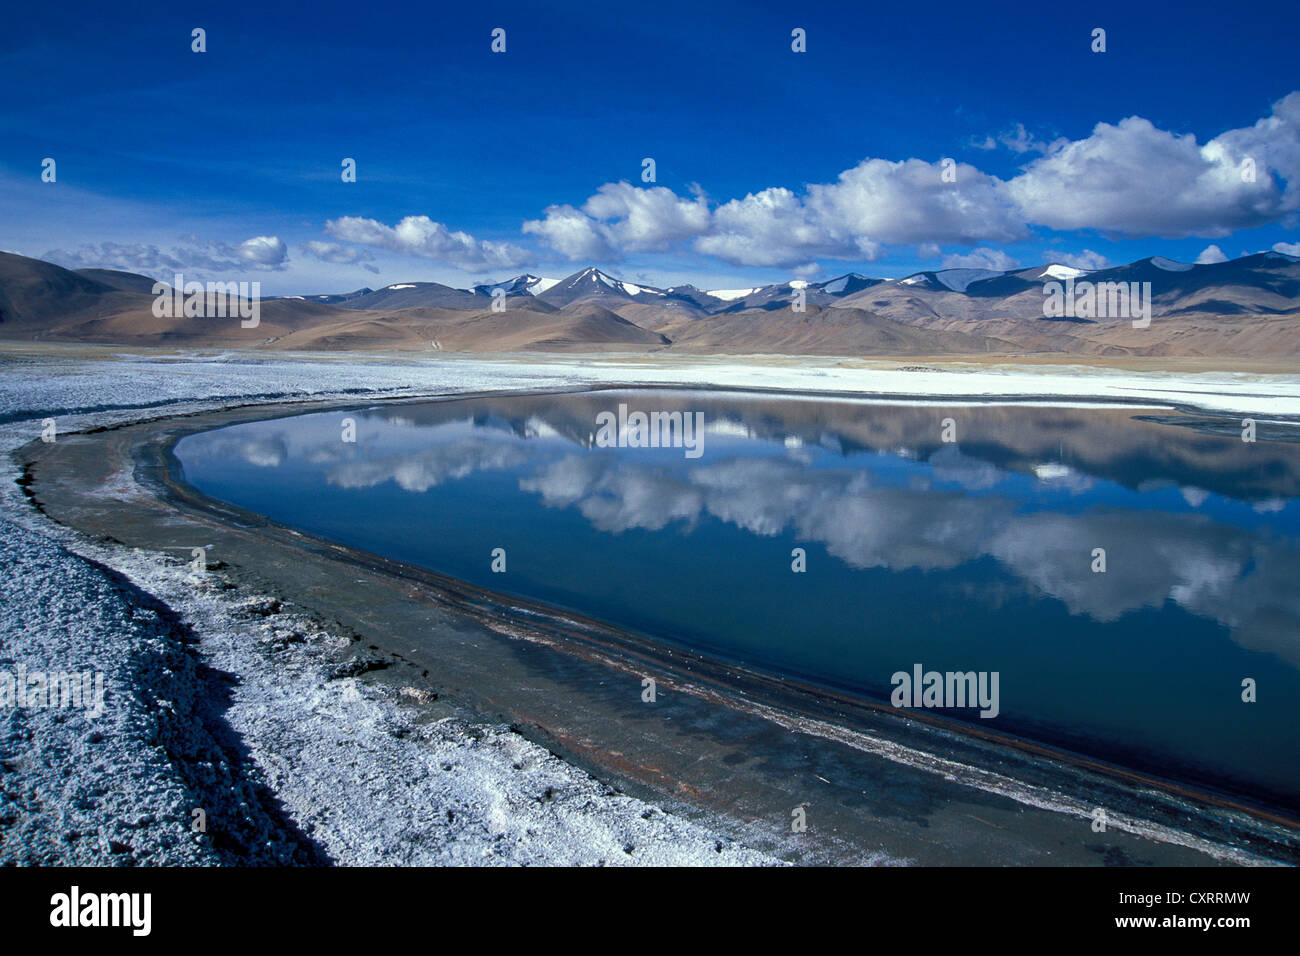 Tso Khar ou haute altitude Tsokhar salt lake, Changthang, Ladakh, Himalaya indien, le Jammu-et-Cachemire, l'Inde du Nord, Inde, Asie Banque D'Images